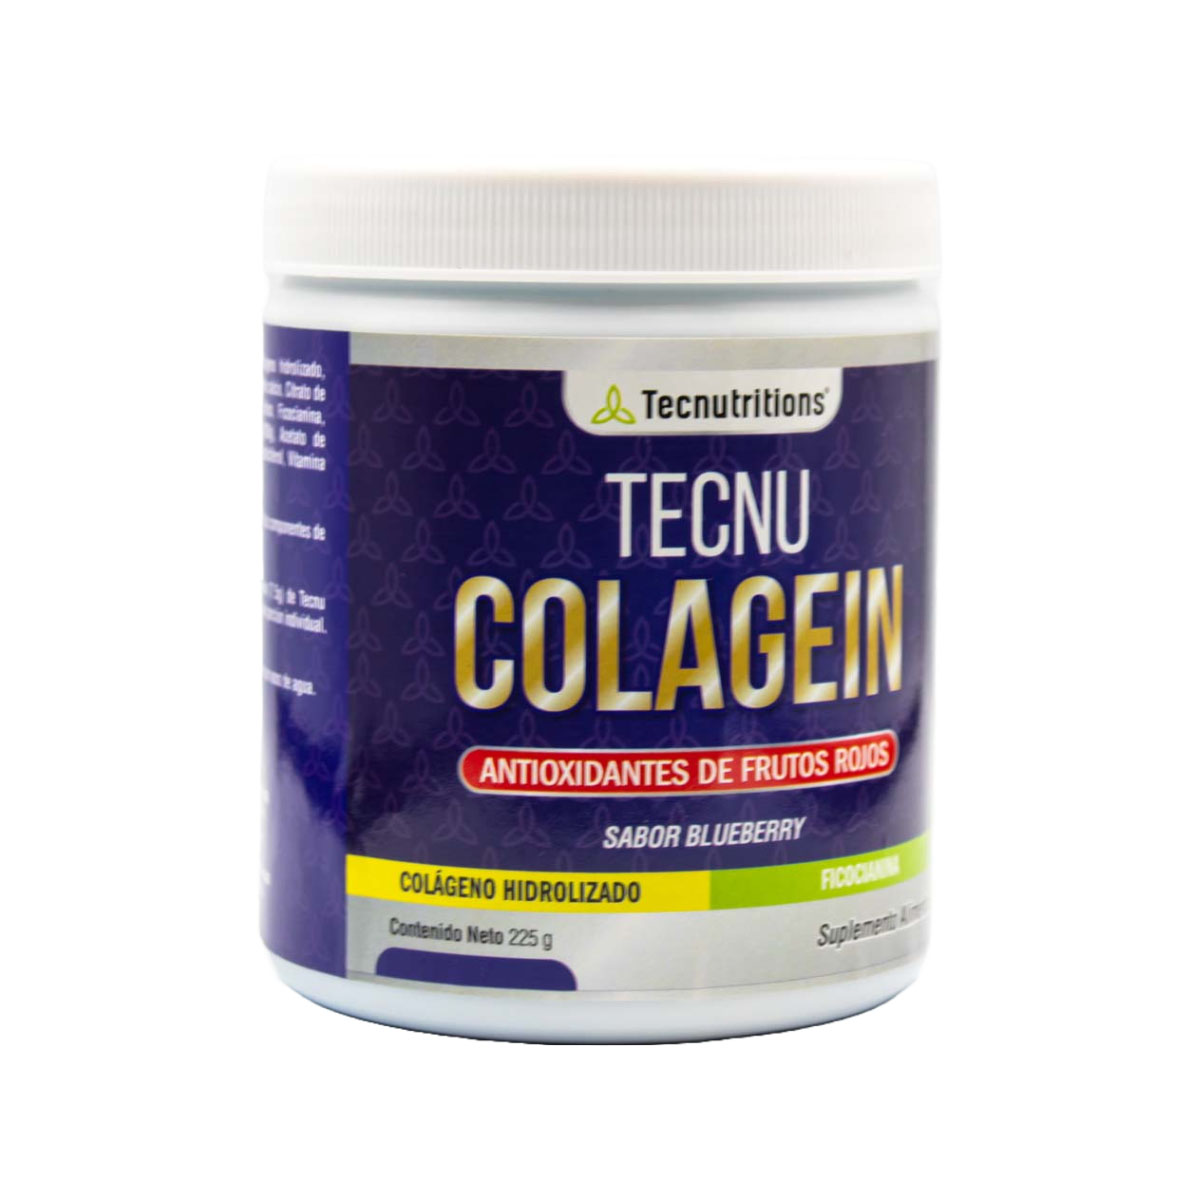 Suplemento alimenticio Tecnu Colagein, 225 gr, con colágeno hidrolizado, ficocianina